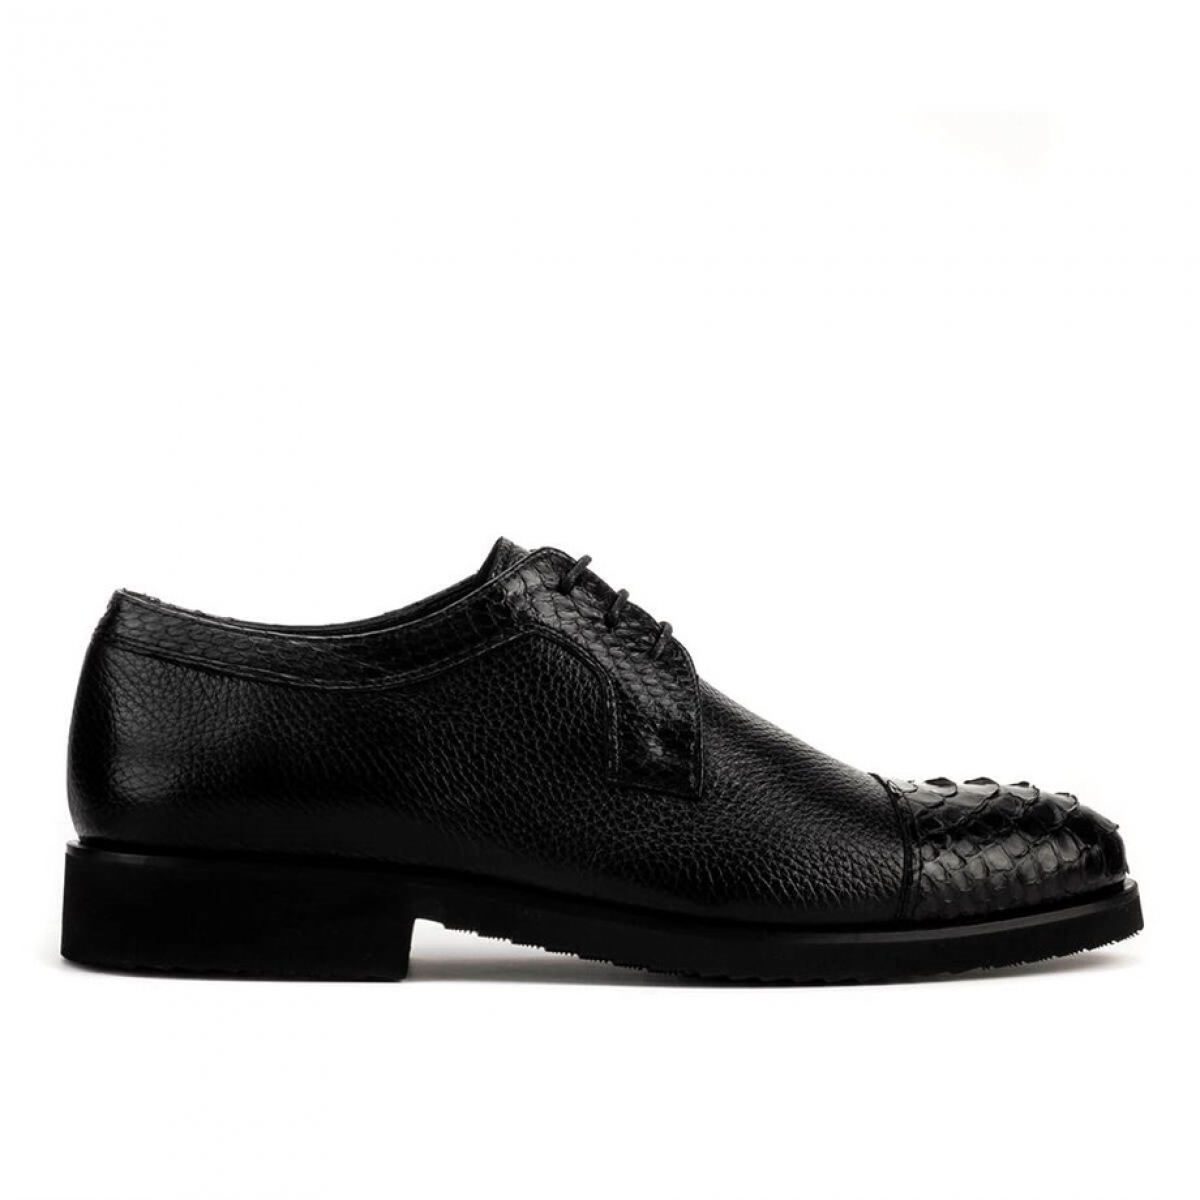 Flo Hakiki Deri Siyah Bağcıklı Erkek Klasik Ayakkabı. 2